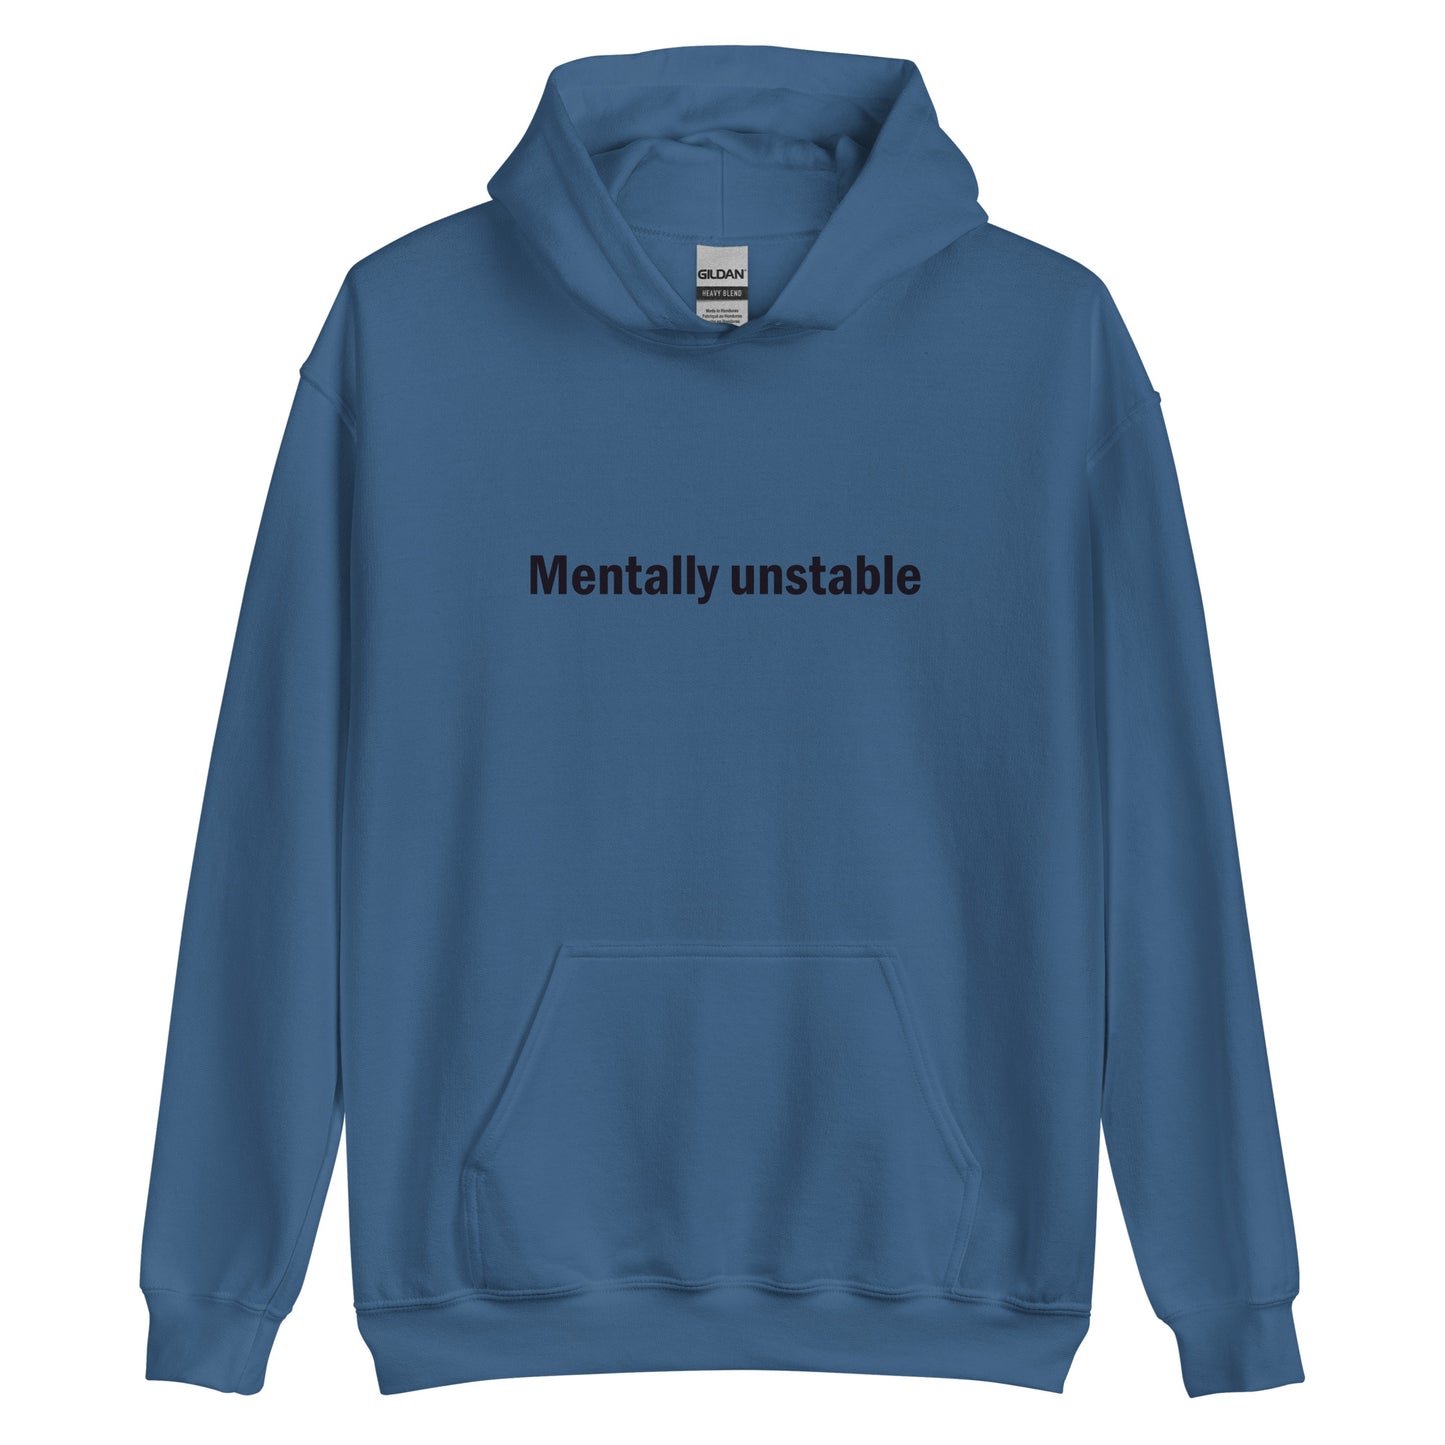 Mentally unstable hoodie